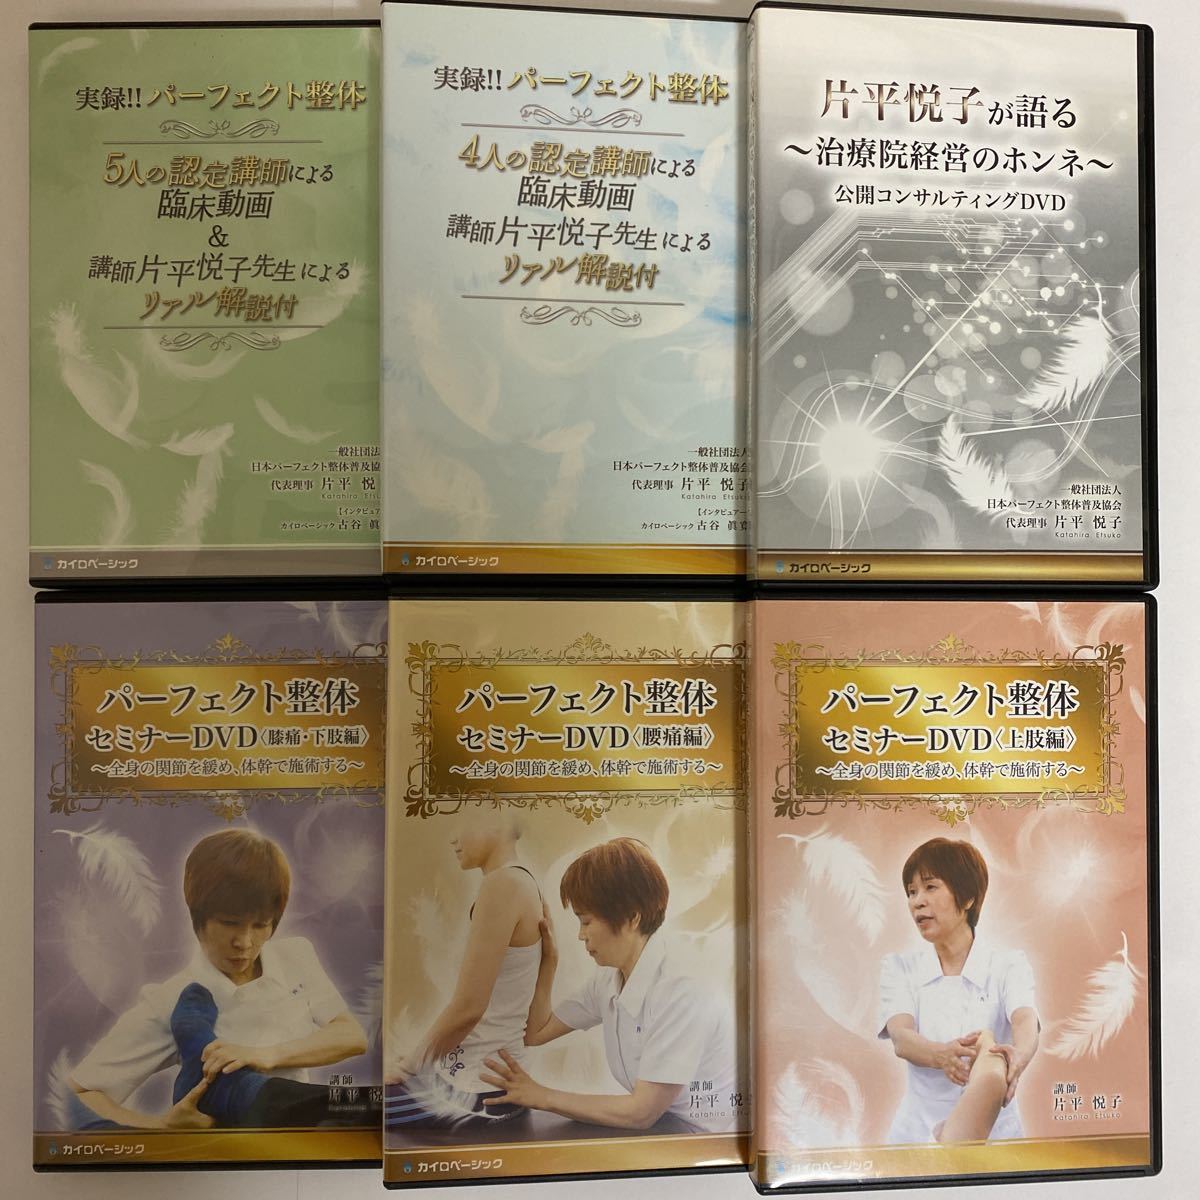 好きに 森田 博也D.O.のオステオパシー セミナー 施術 DVD 正規品